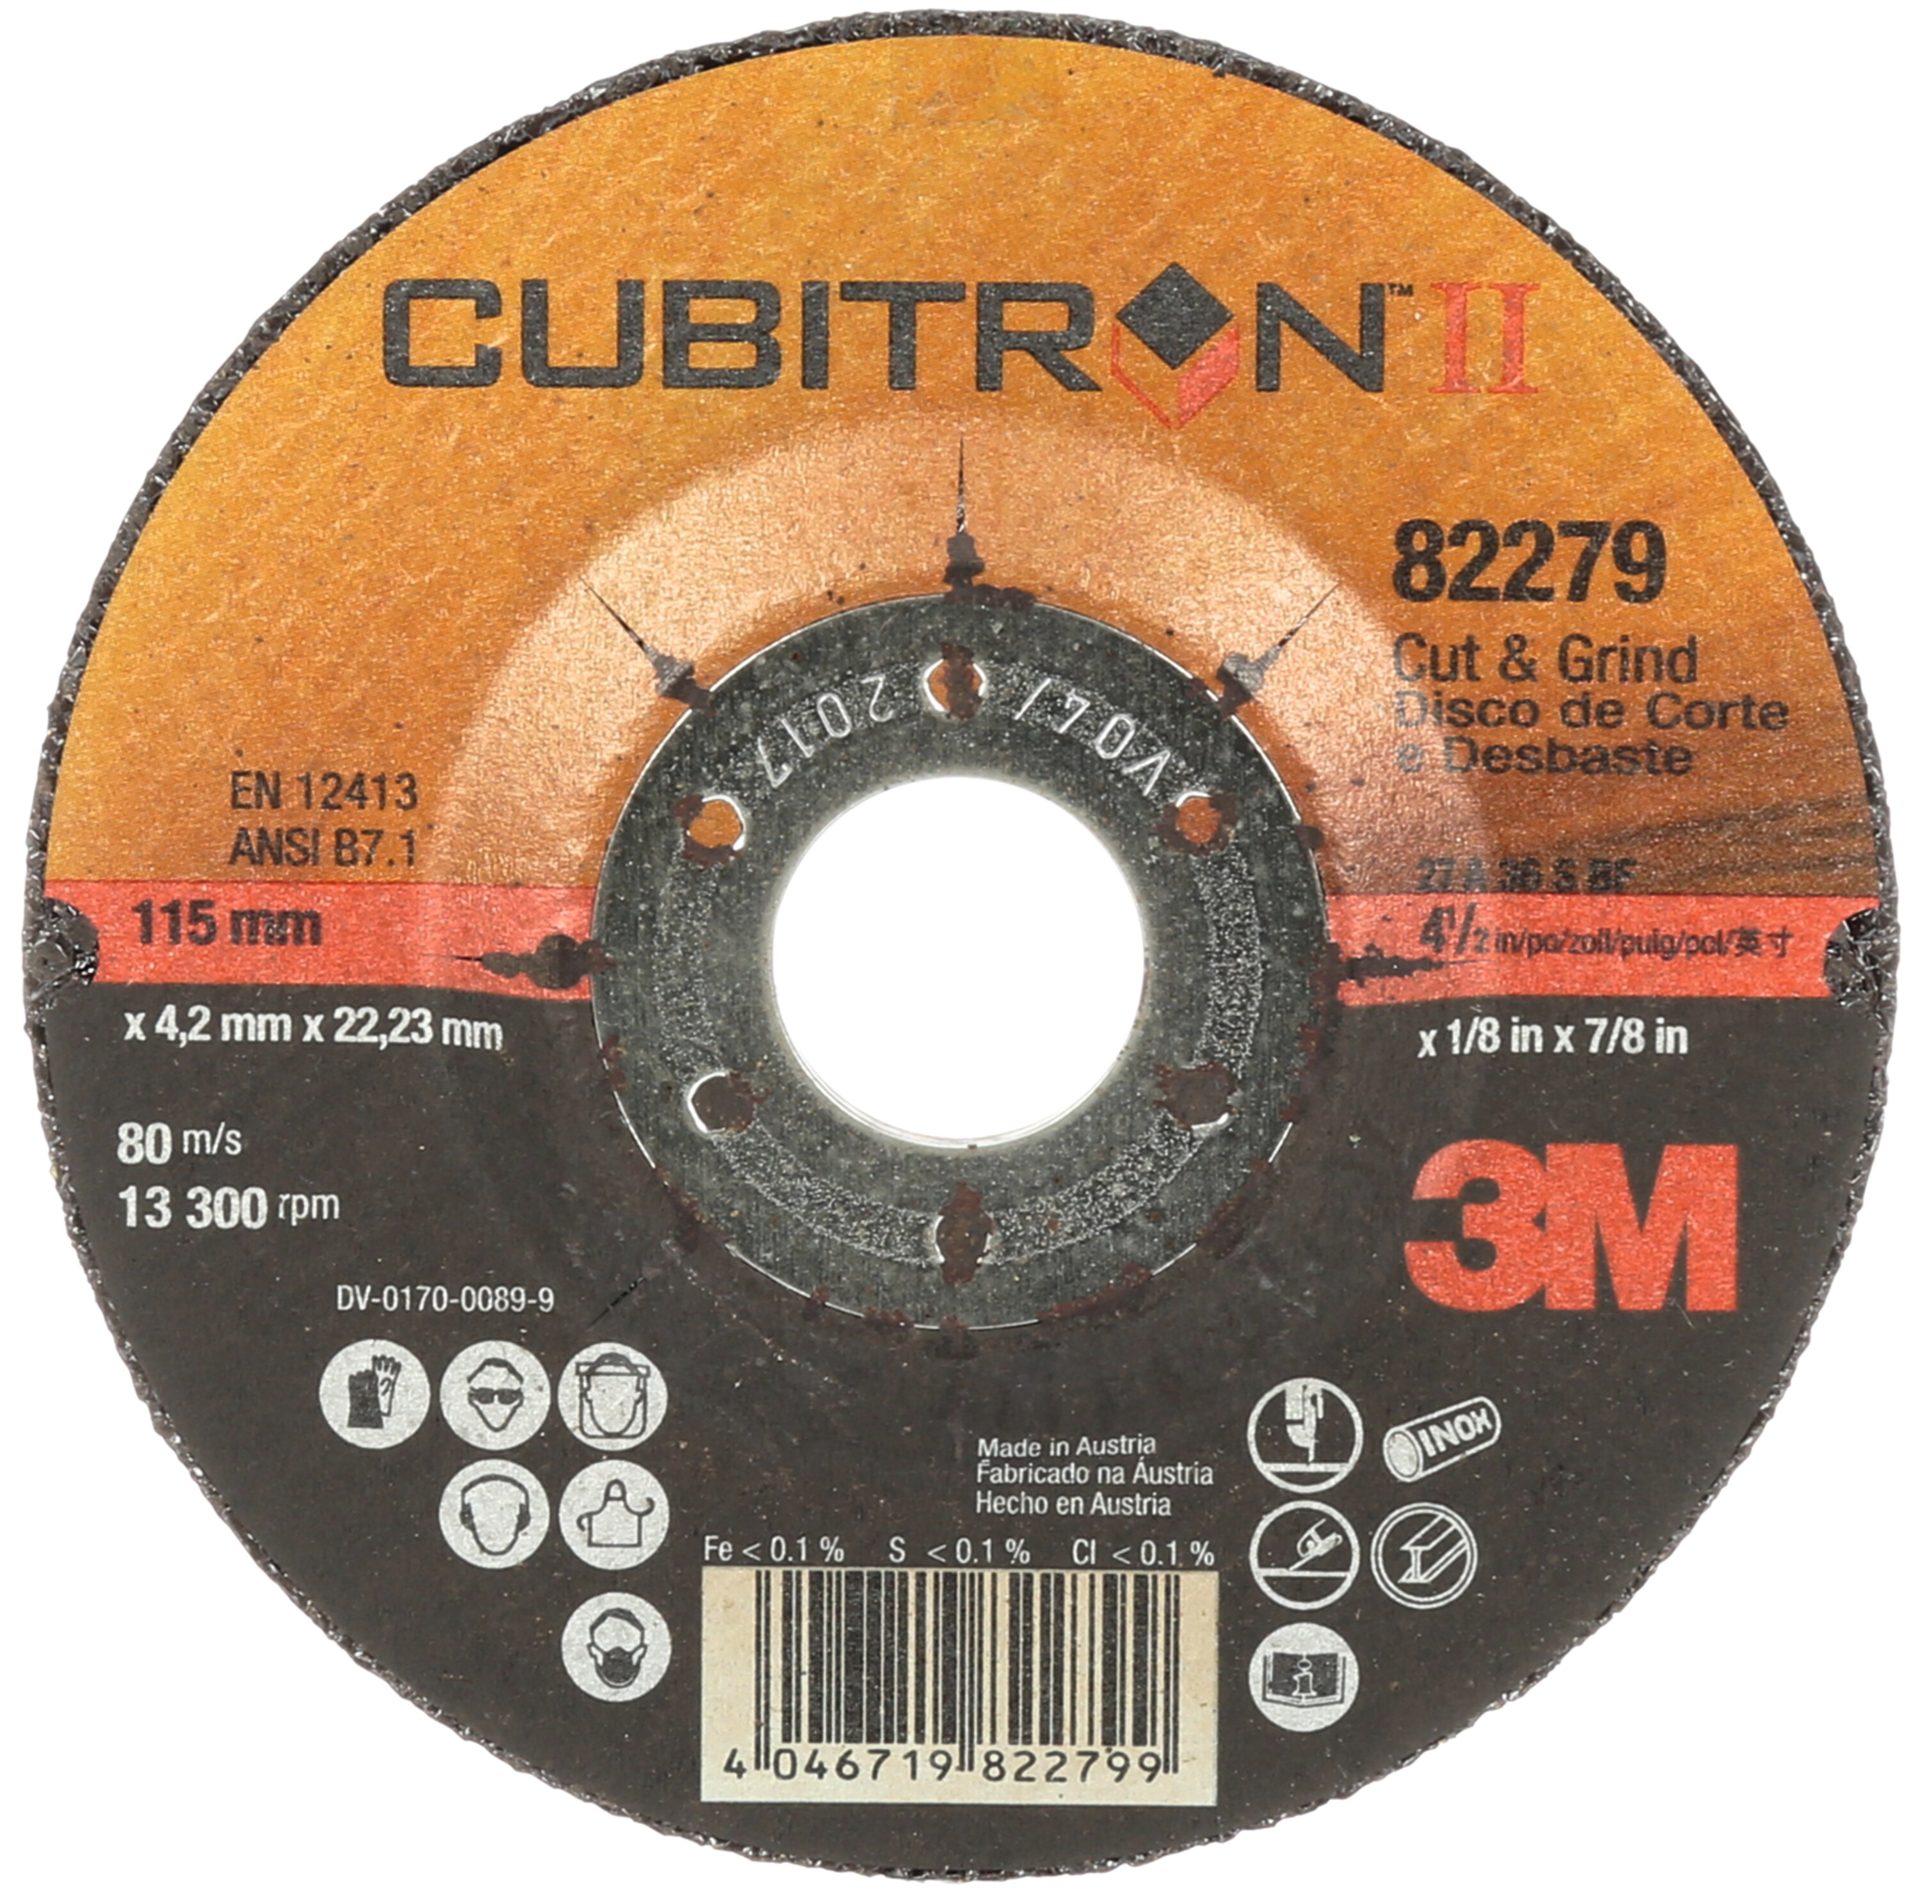 Schruppscheibe Cubitron™ II Cut & Grind Stahl/VA gekröpft D115mm B4,2mm Bohrung 22,23mm